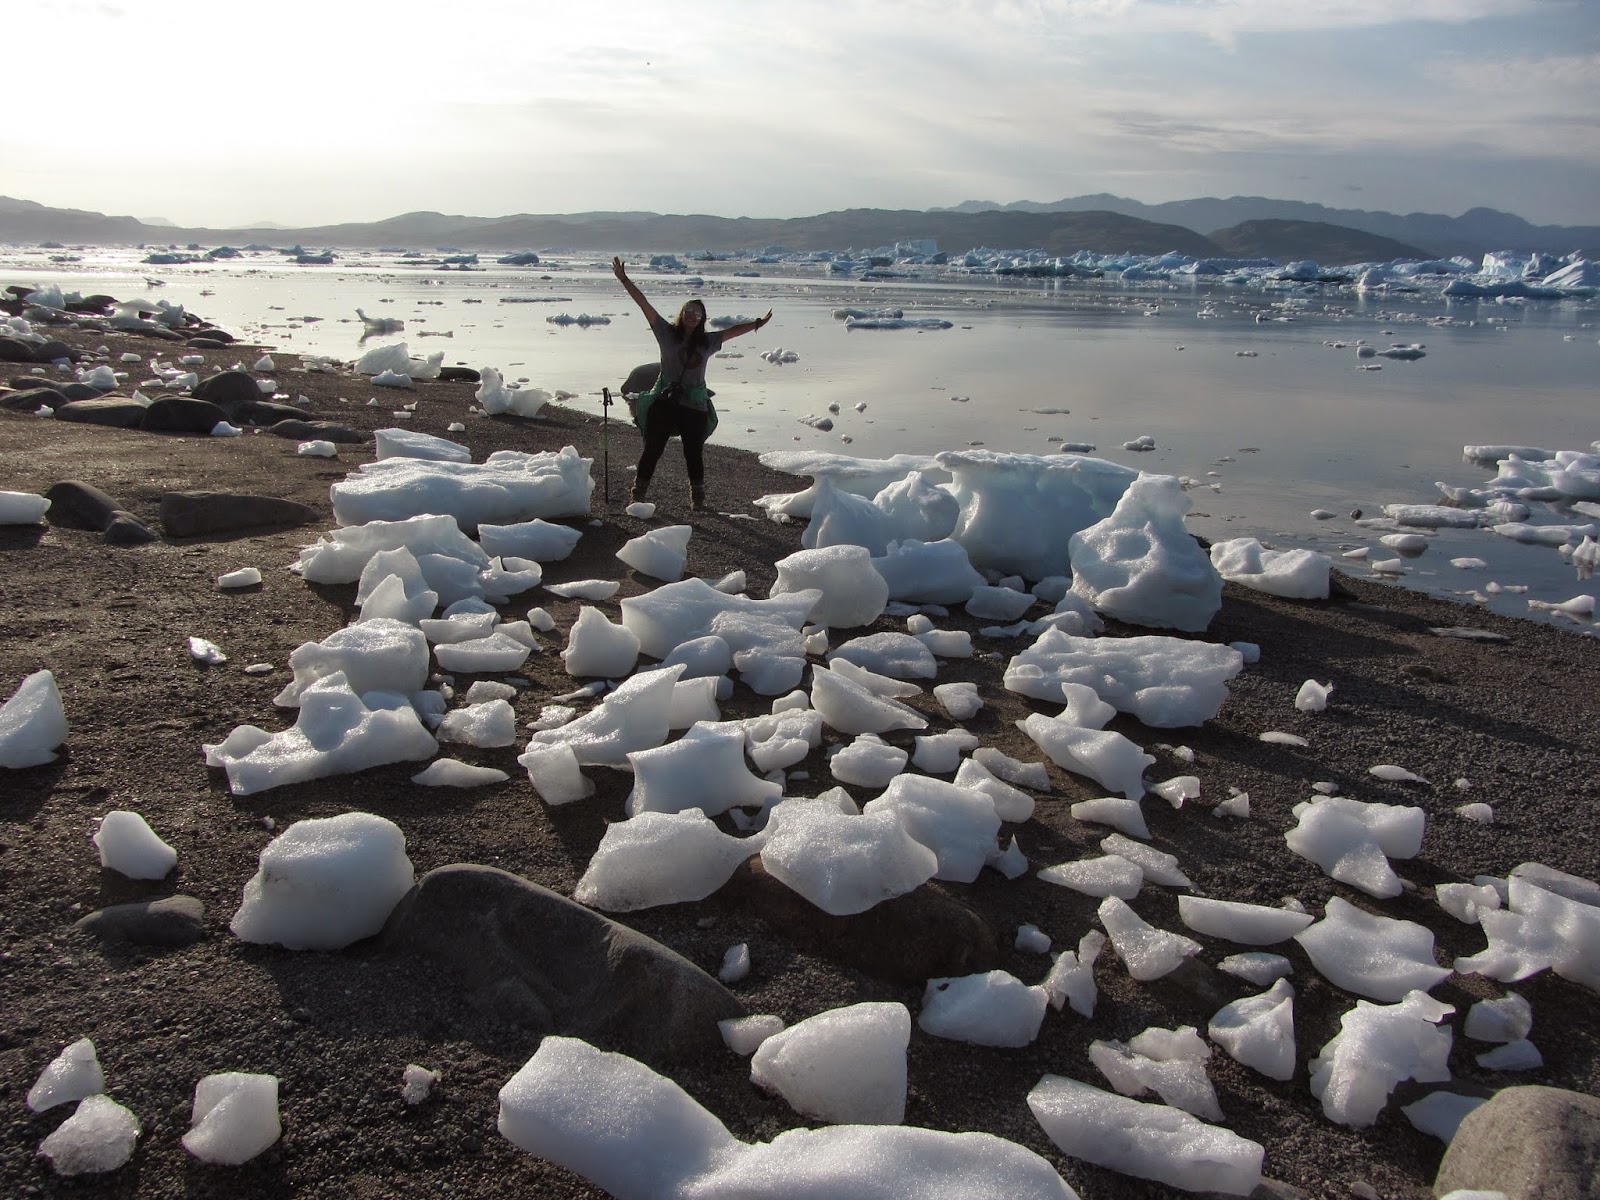 VISITAR A GRONELÂNDIA | Lugares e experiências incríveis na Gronelândia (Groenlândia)